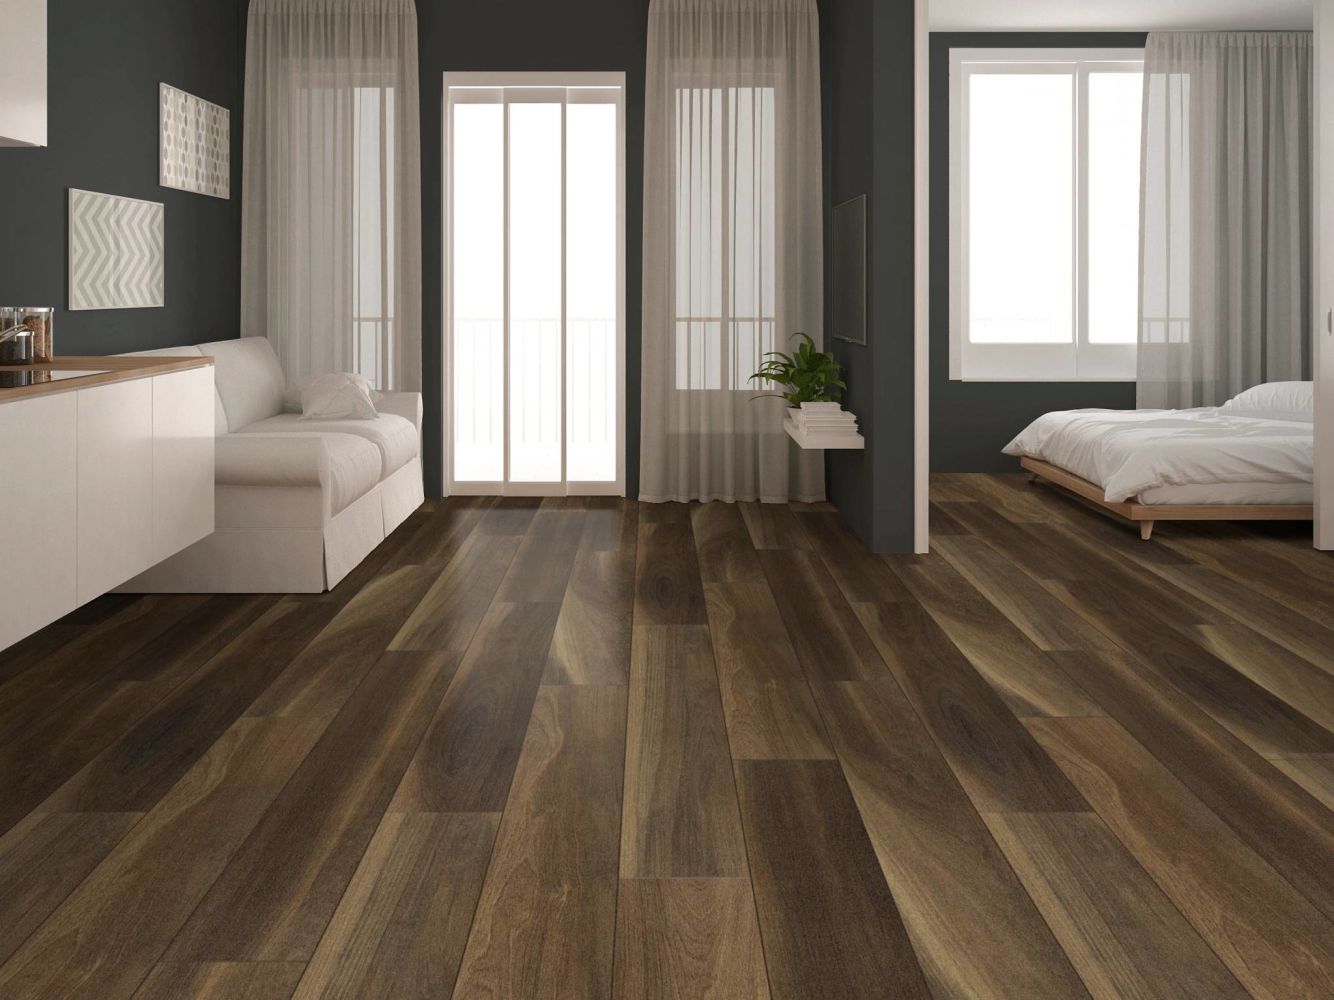 Shaw Floors Cp Colortile Rigid Core Plank And Tile Chancel Oak Clk Ravine Oak 00798_CV171